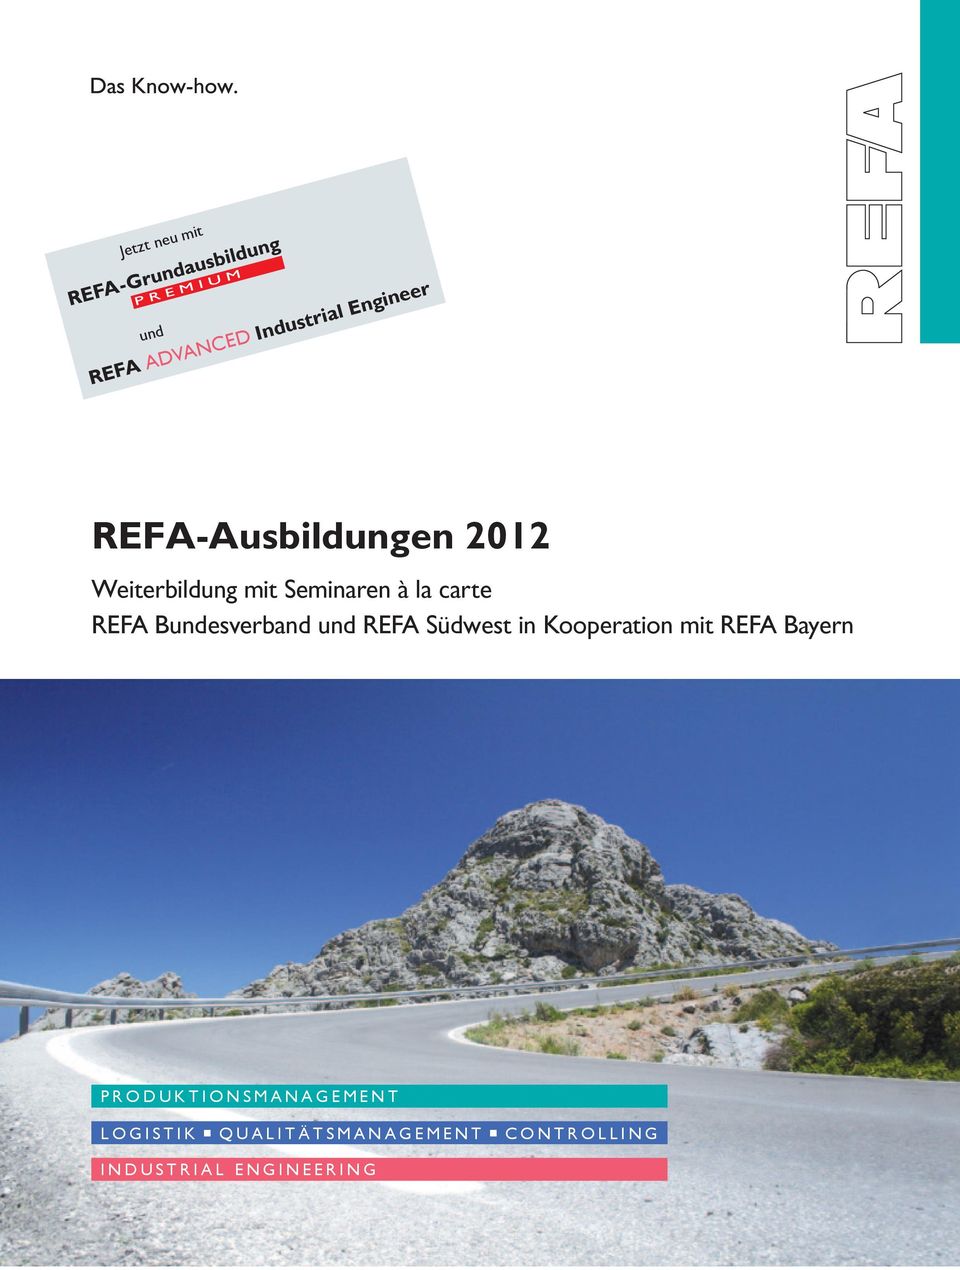 Bundesverband und REFA Südwest in Kooperation mit REFA Bayern